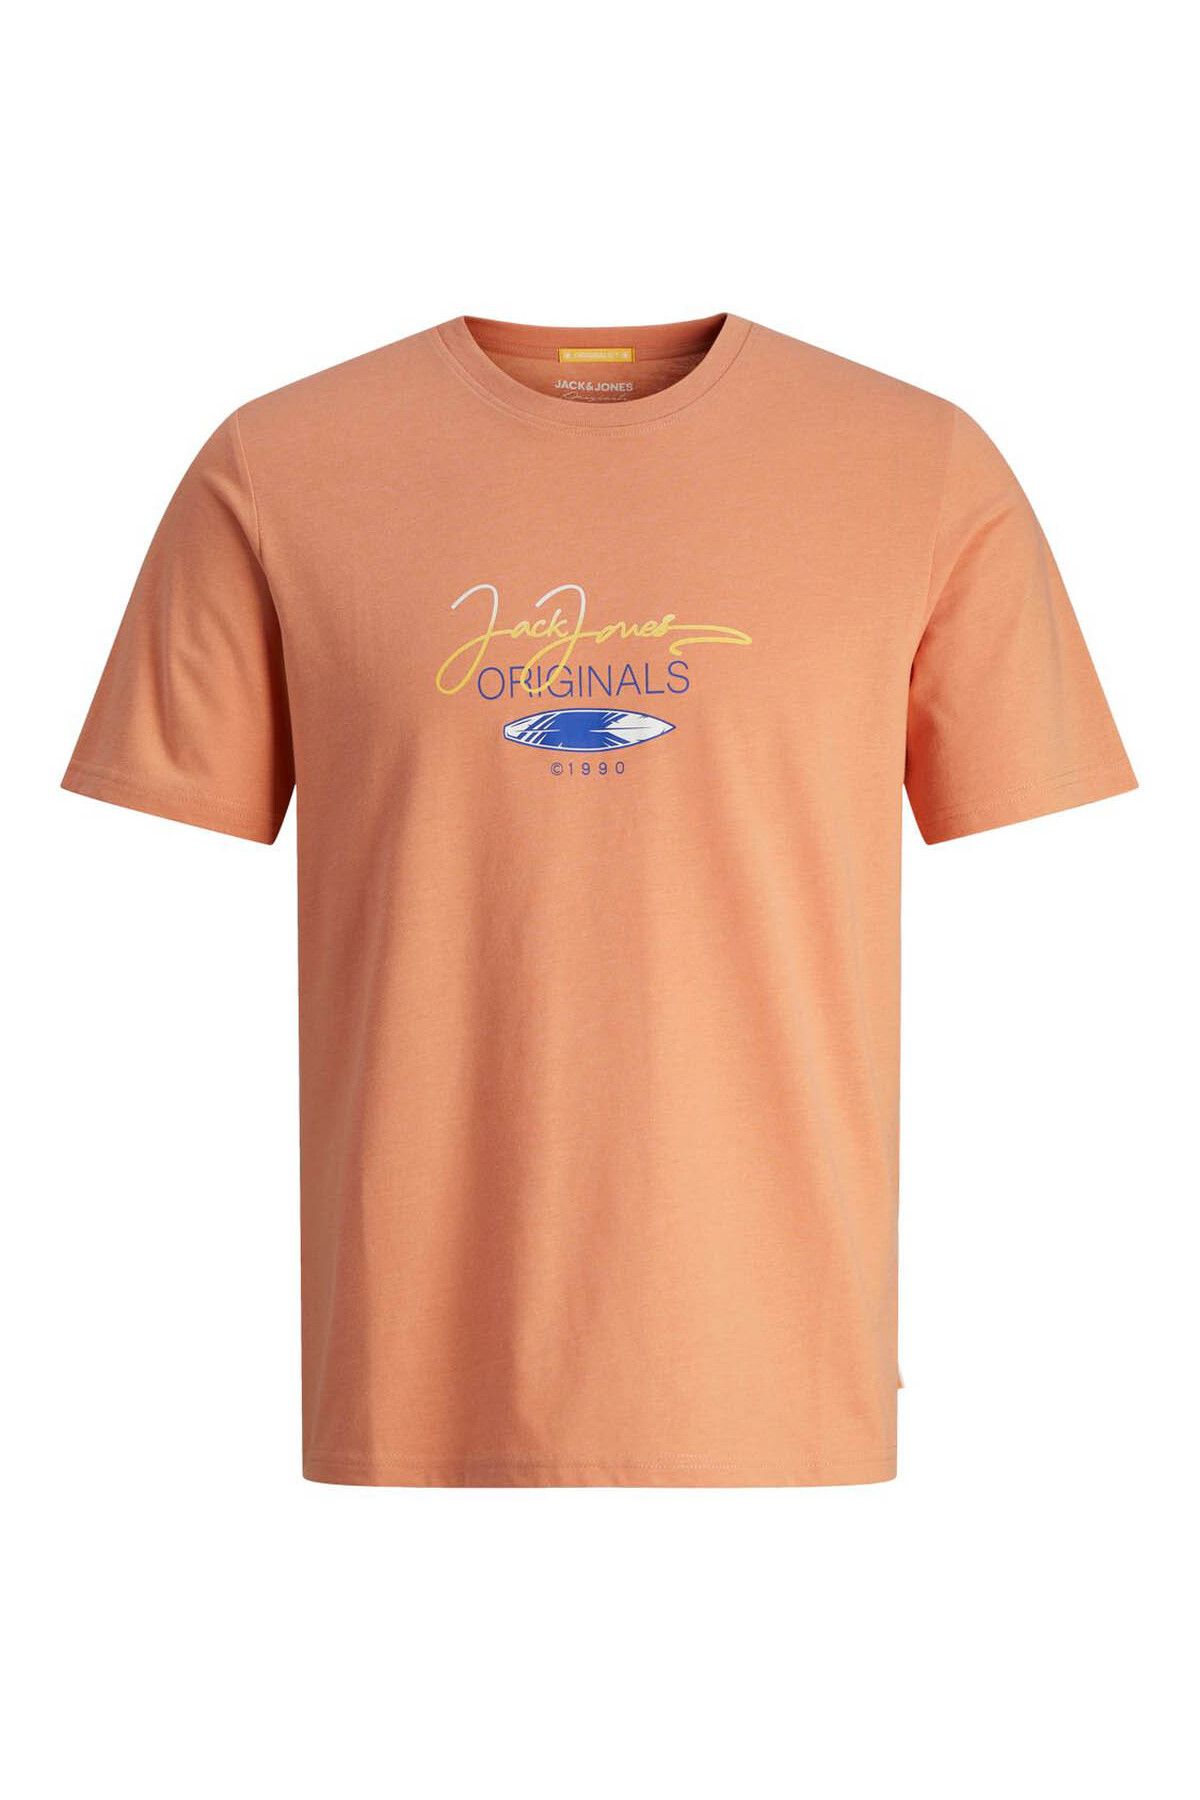 Jack & Jones Erkek T-shirt Kremit 12255238 Jorcasey Tee Ss